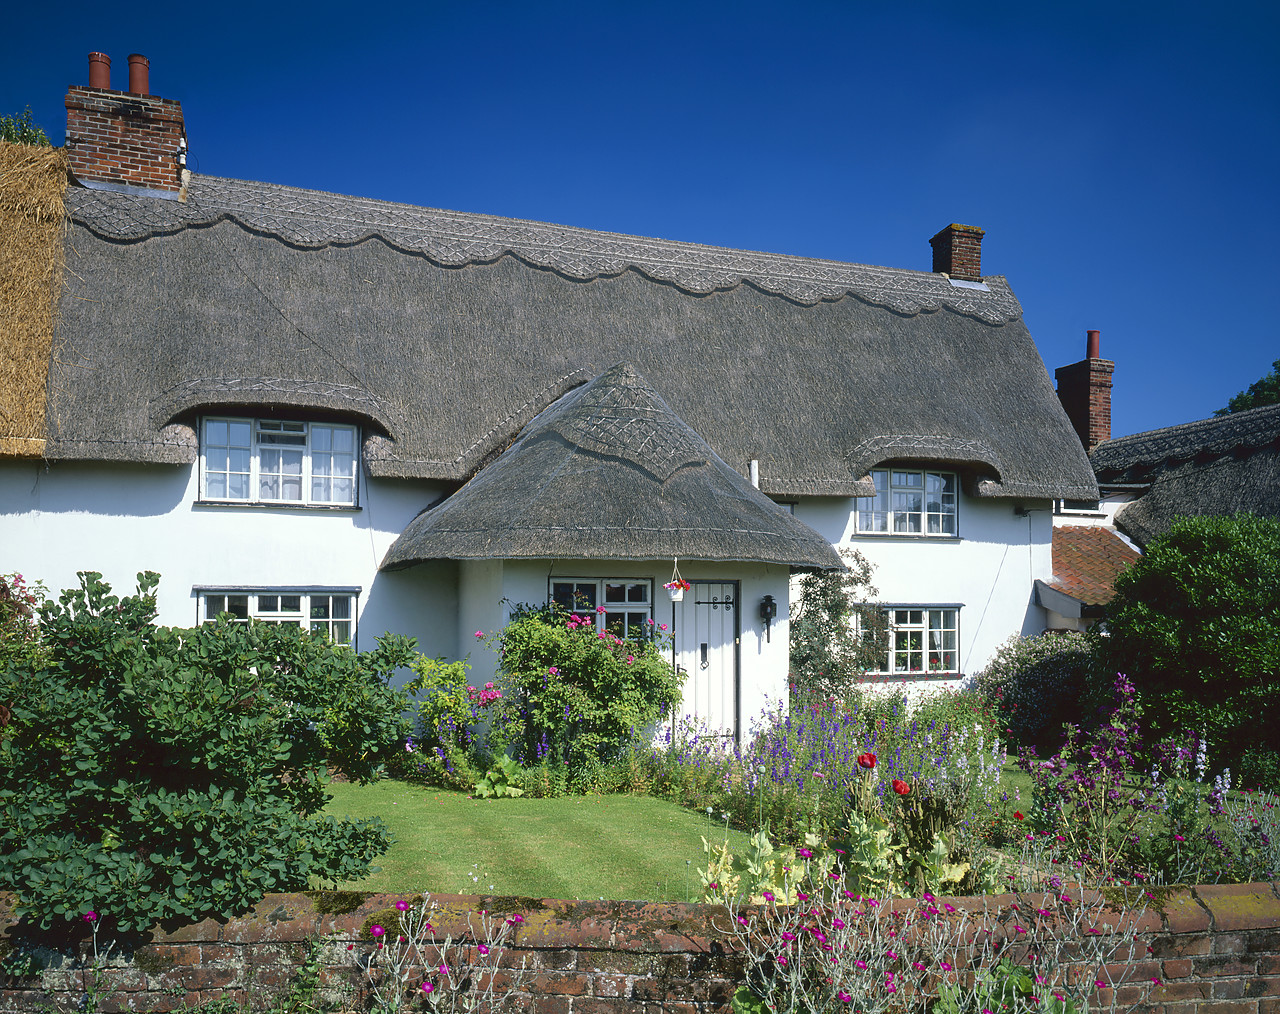 #970188-2 - Thatched Cottage, Pulham Market, Norfolk, England